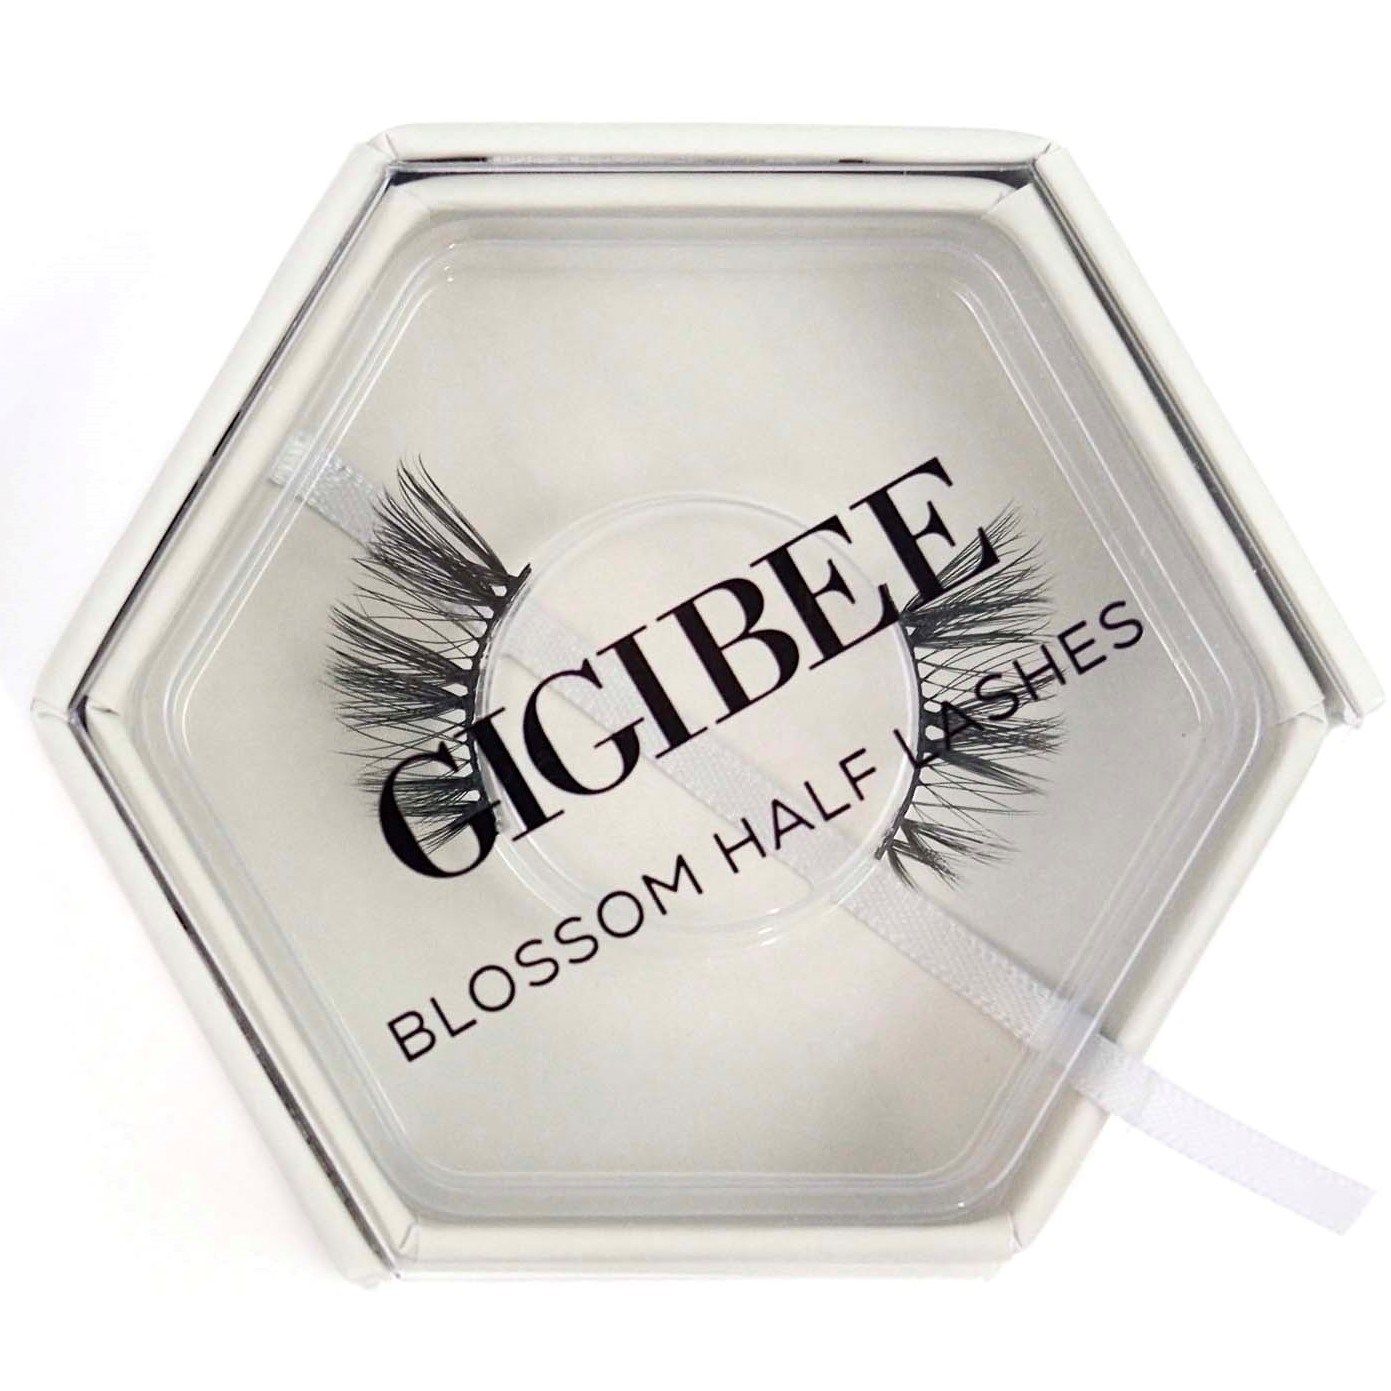 Gigibee Beauty Blossom Half Lashes